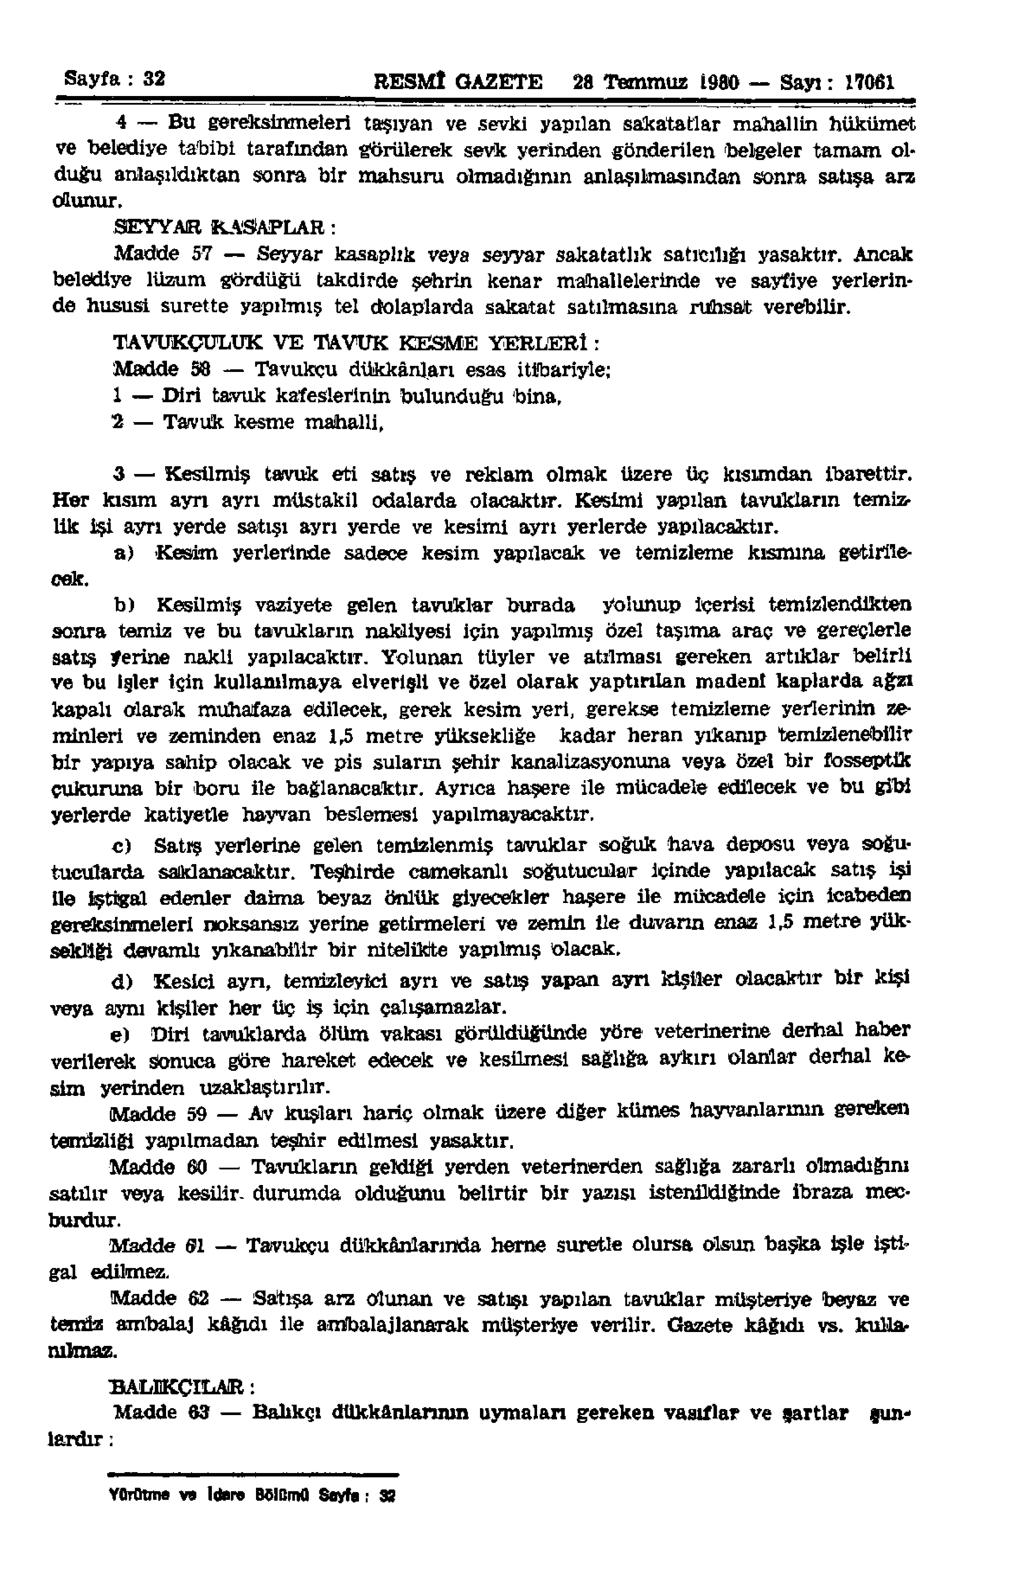 Sayfa : 32 RESMÎ GAZETE 28 Temmuz 1980 Sayı: 17061 4 Bu gereksinmeleri taşıyan ve şevki yapılan sakatatlar mahallin hükümet ve belediye tabibi tarafmdan görülerek sevk yerinden gönderilen belgeler